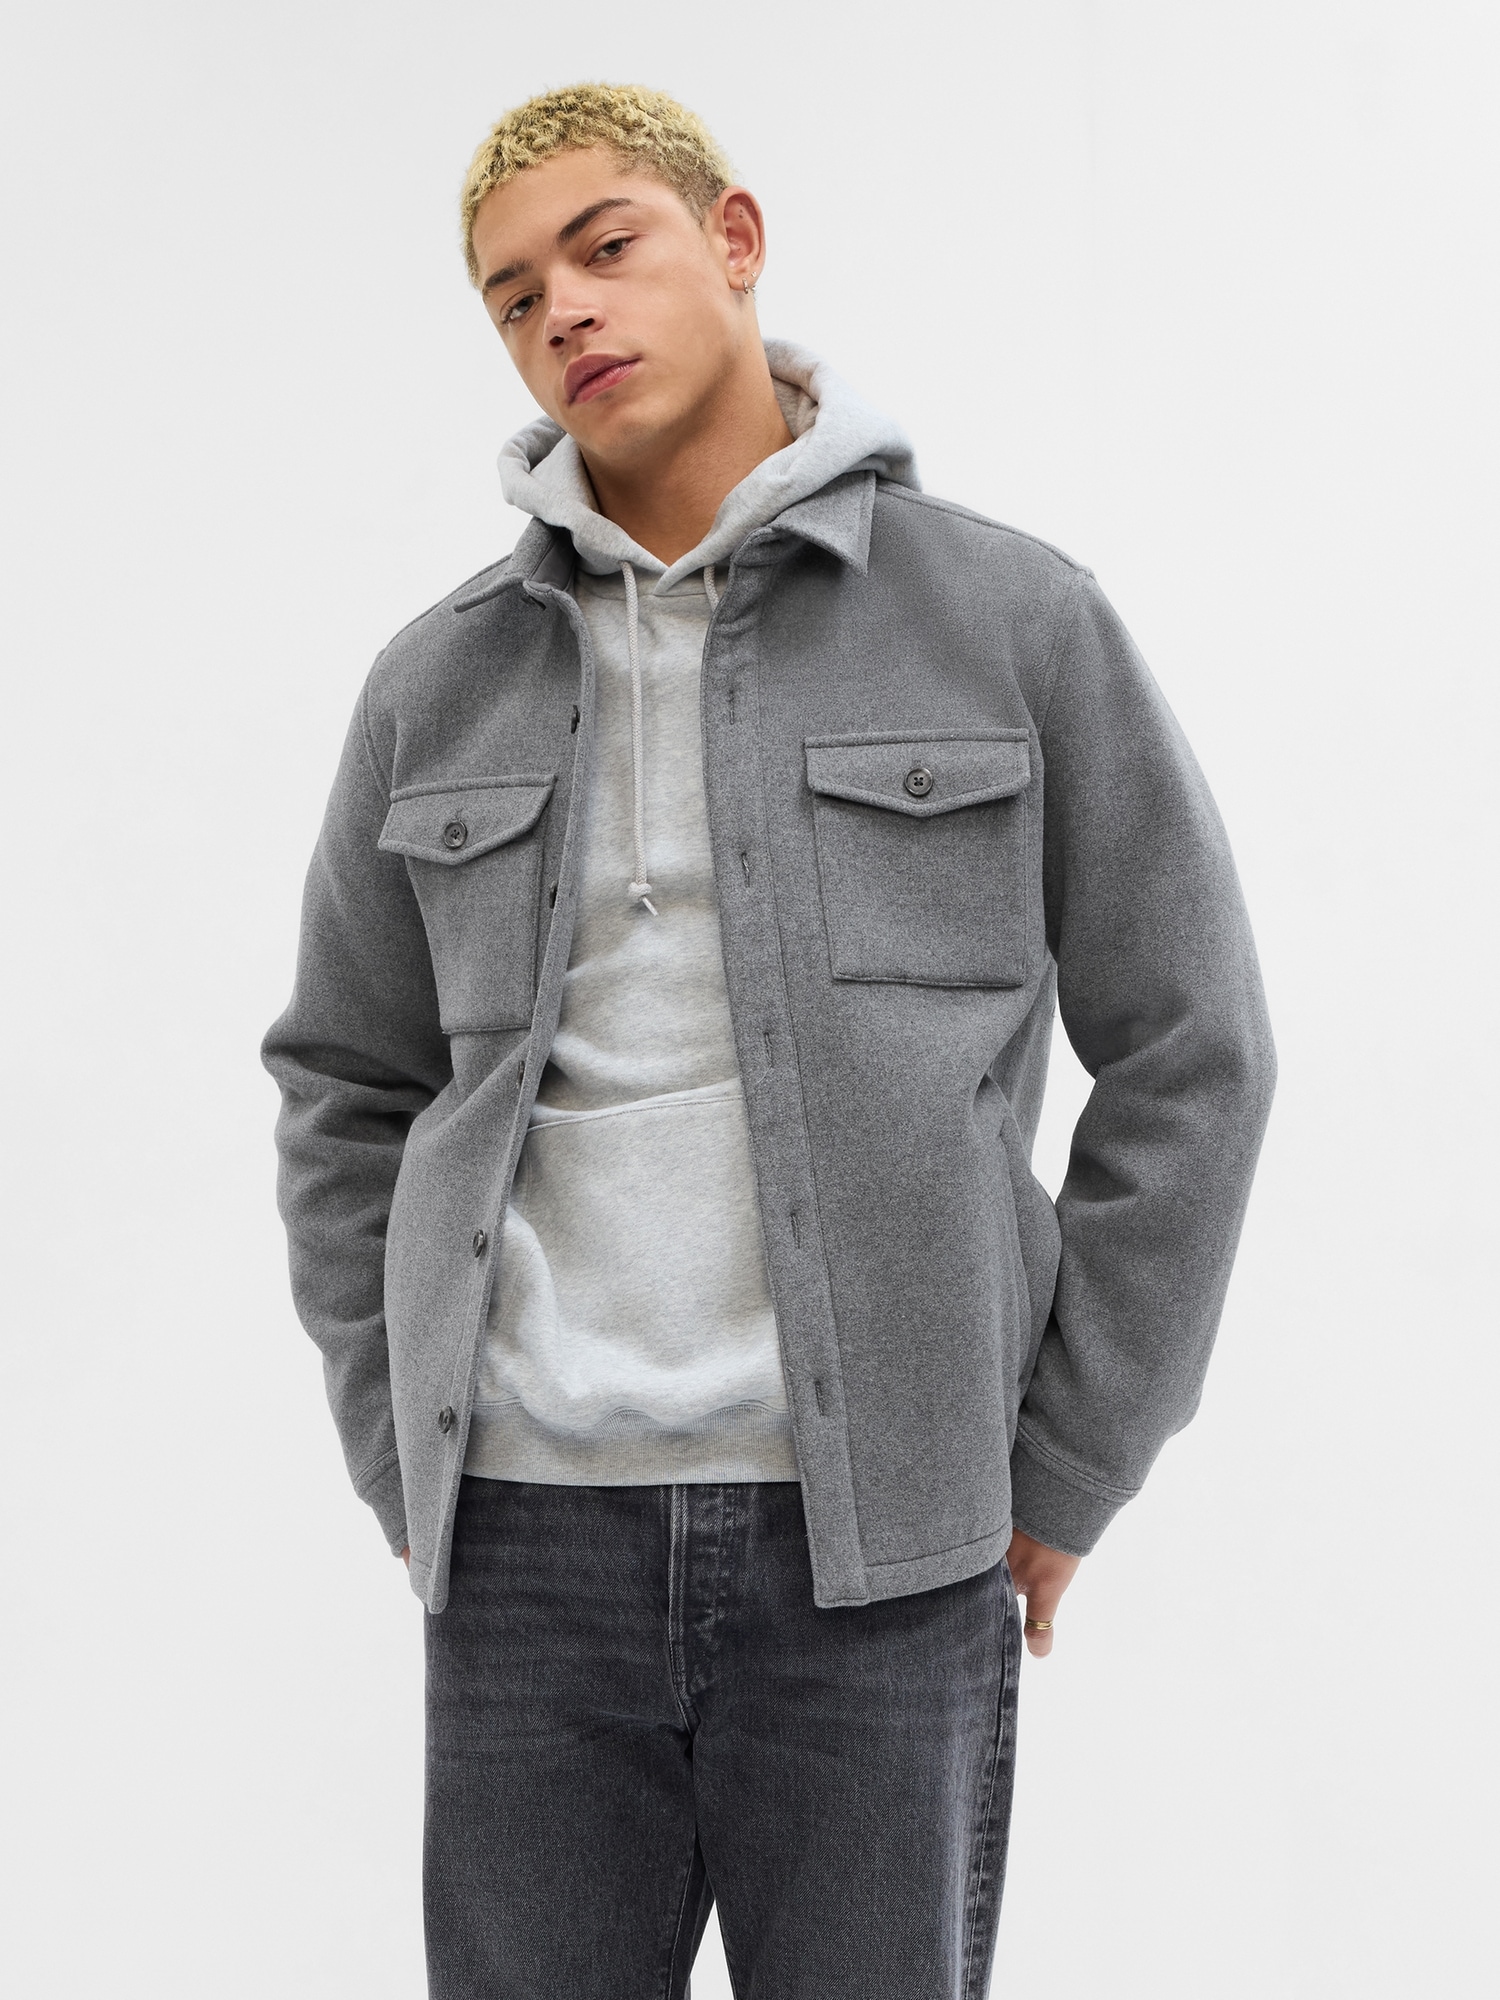 Wool Button-Front Shirt Jacket | Gap